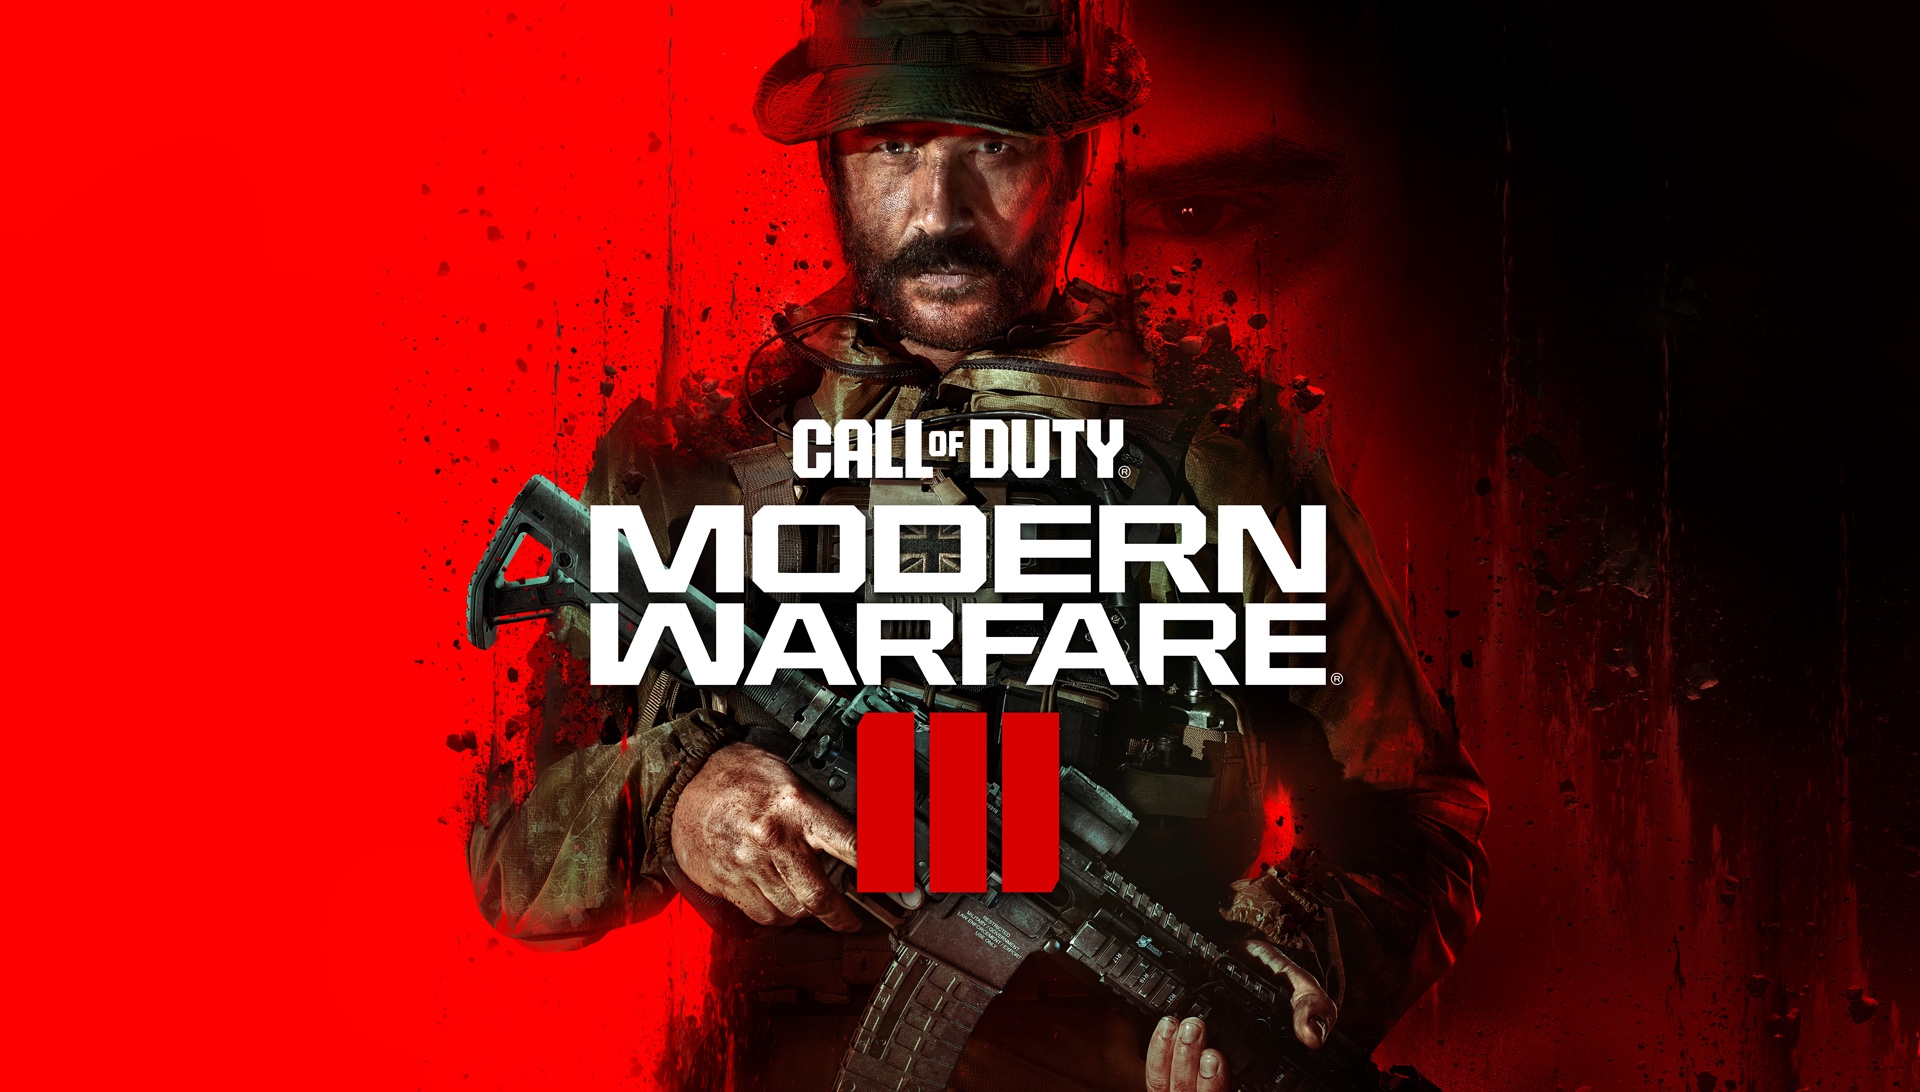 Presentación mundial de Call of Duty: Modern Warfare III